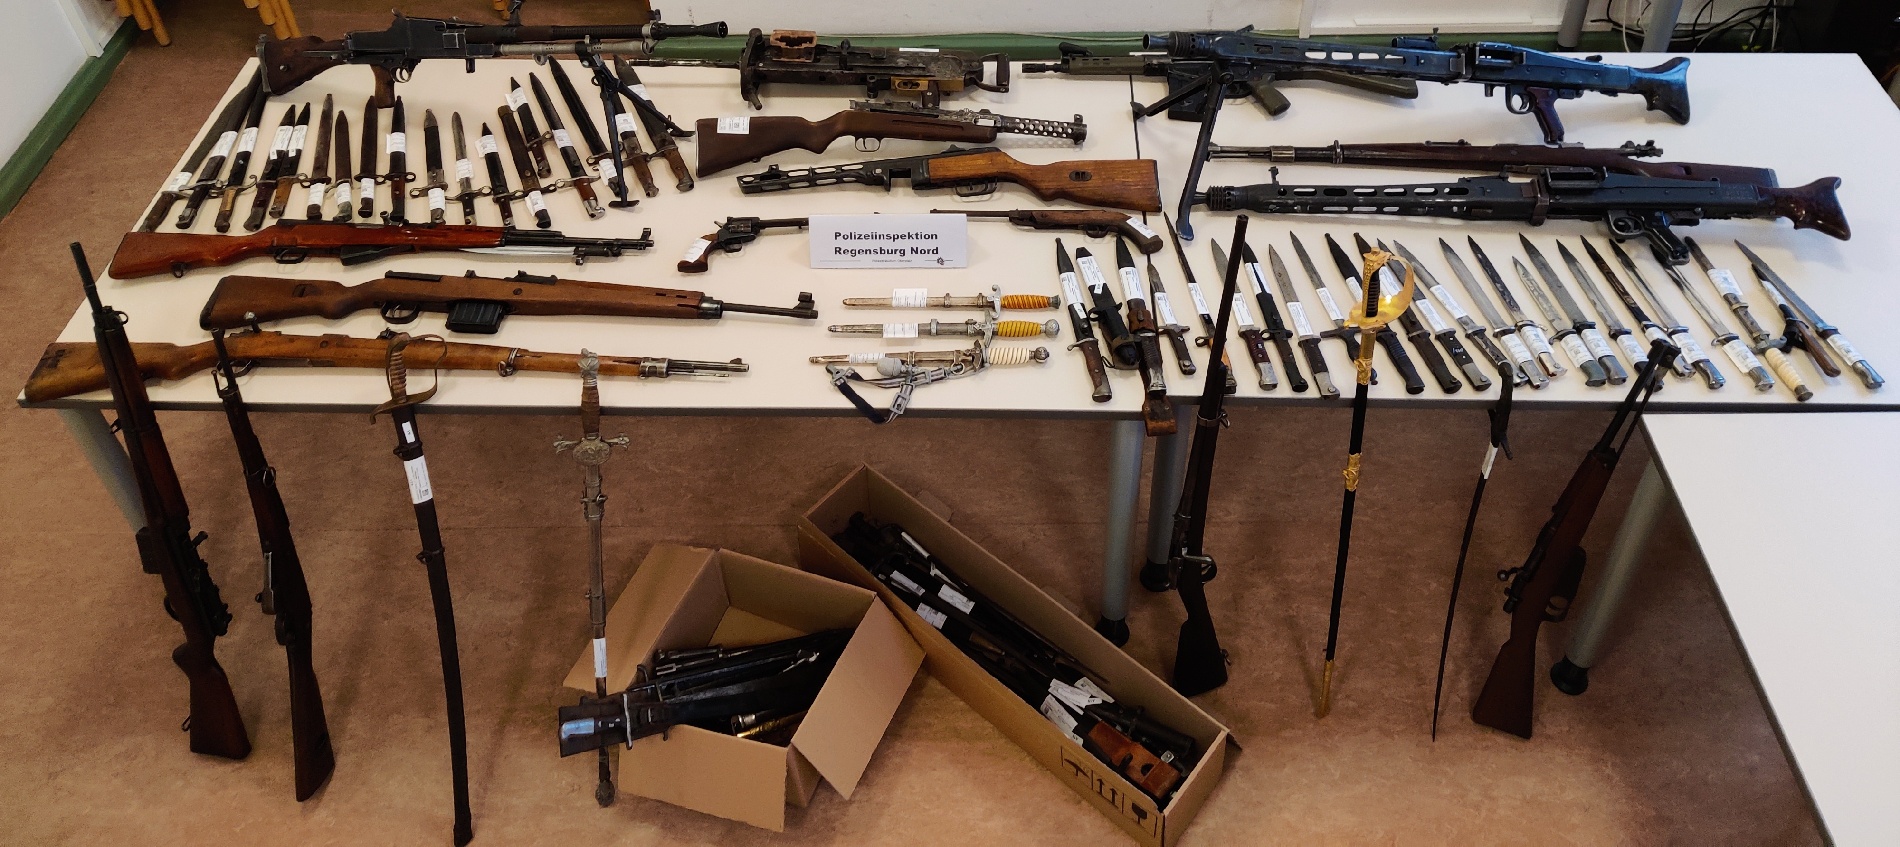 Polizei findet größere Menge an Waffen unter Dach in Regensburg